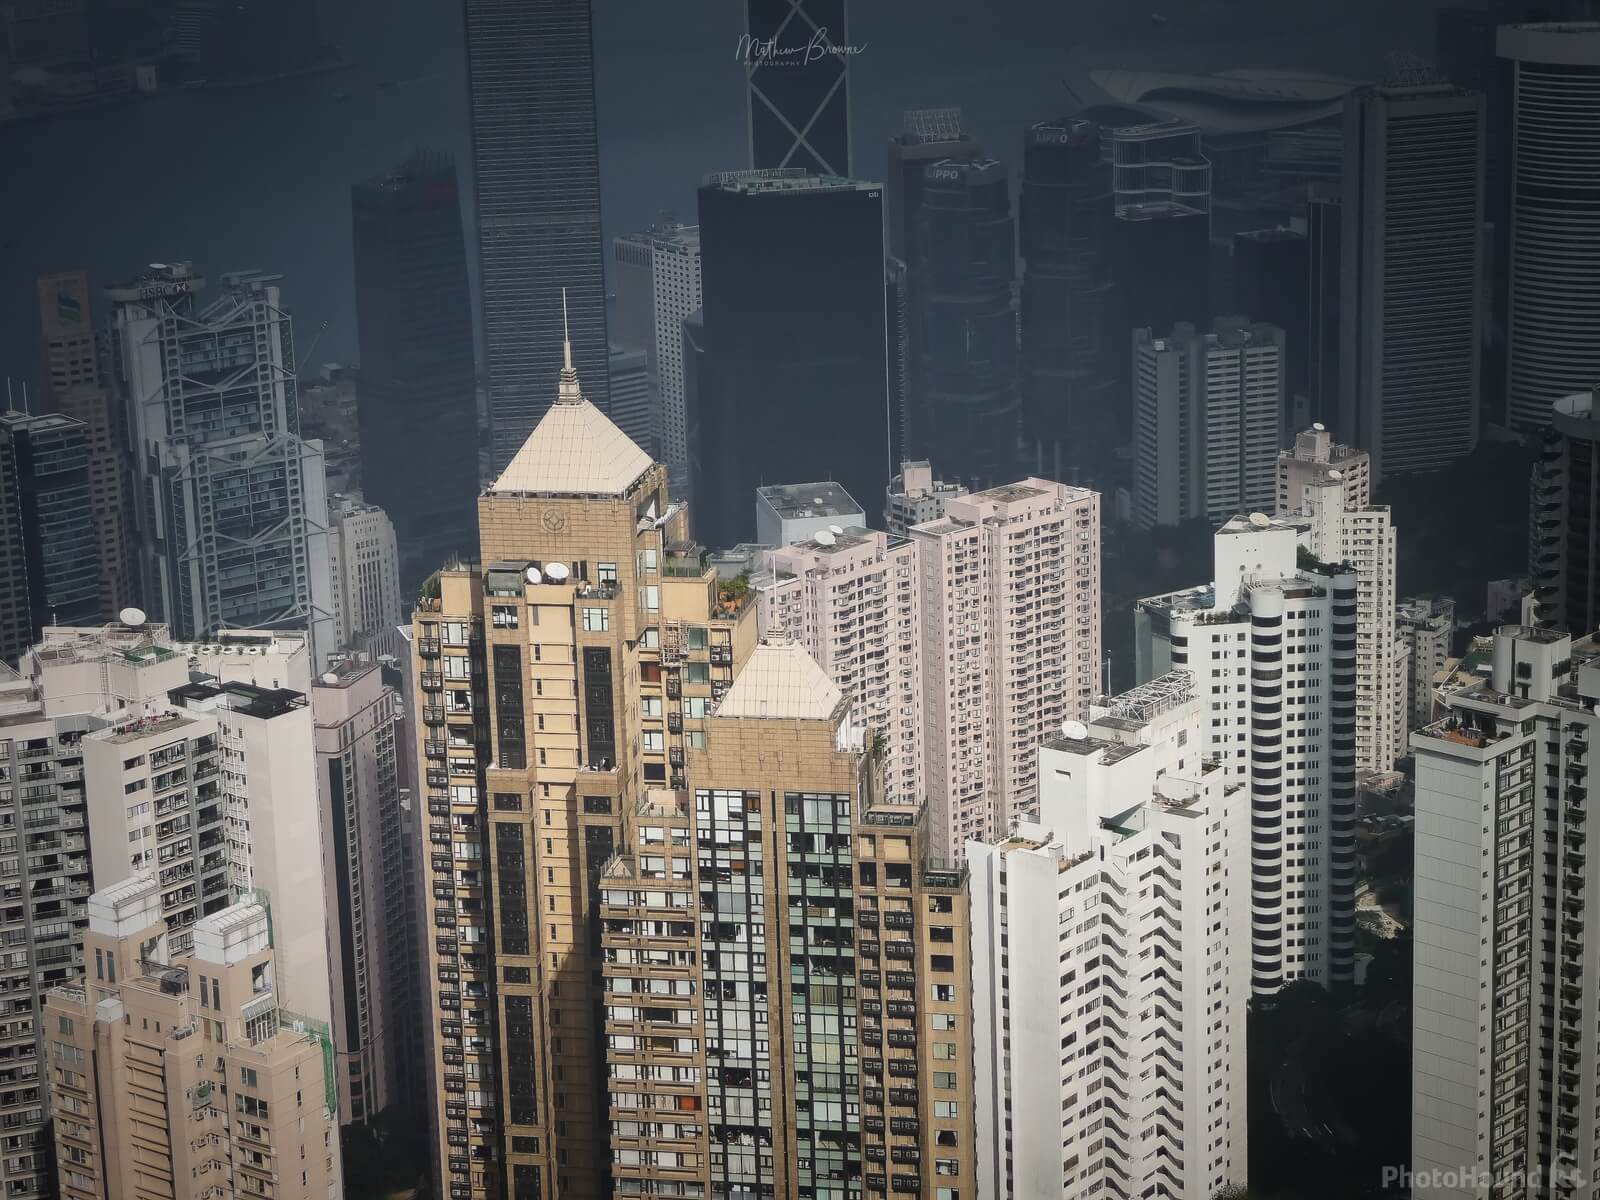 Image of Hong Kong Peak Tower by Mathew Browne